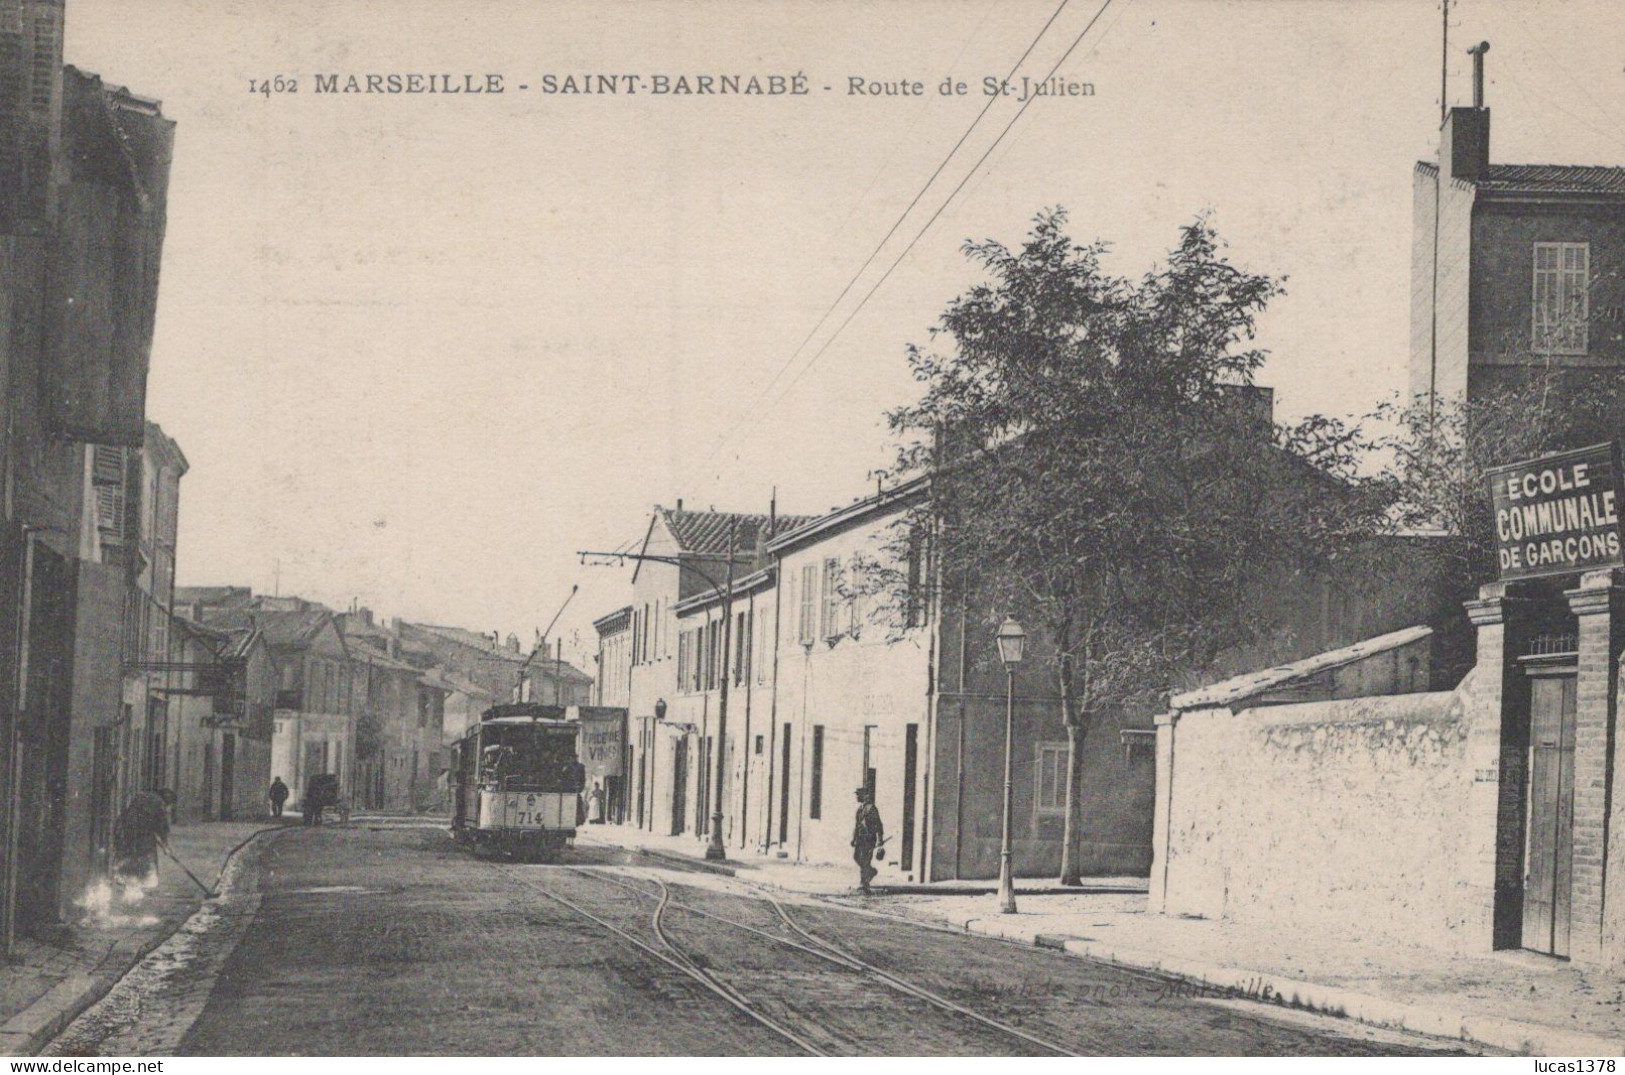 13 / MARSEILLE / SAINT BARNABE / ROUTE DE ST JULIEN / GUENDE 1462 / RARE ET TRES BELLE CARTE TRAMWAY - Saint Barnabé, Saint Julien, Montolivet